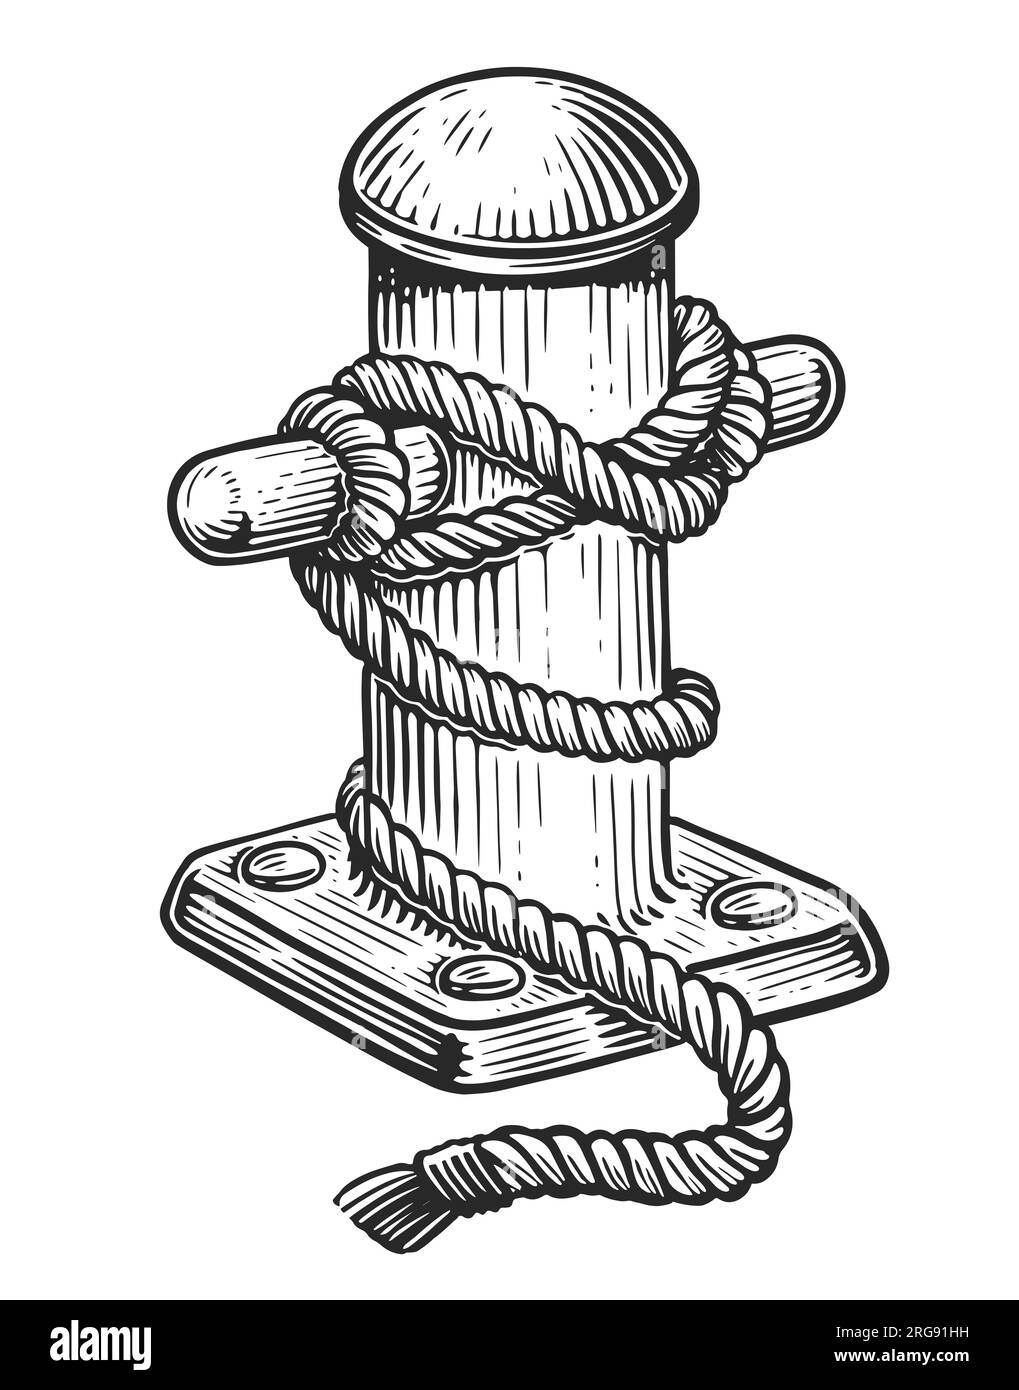 Vecchio dissuasore marino con corda legata sul molo. Disegno a mano illustrazione vintage Foto Stock